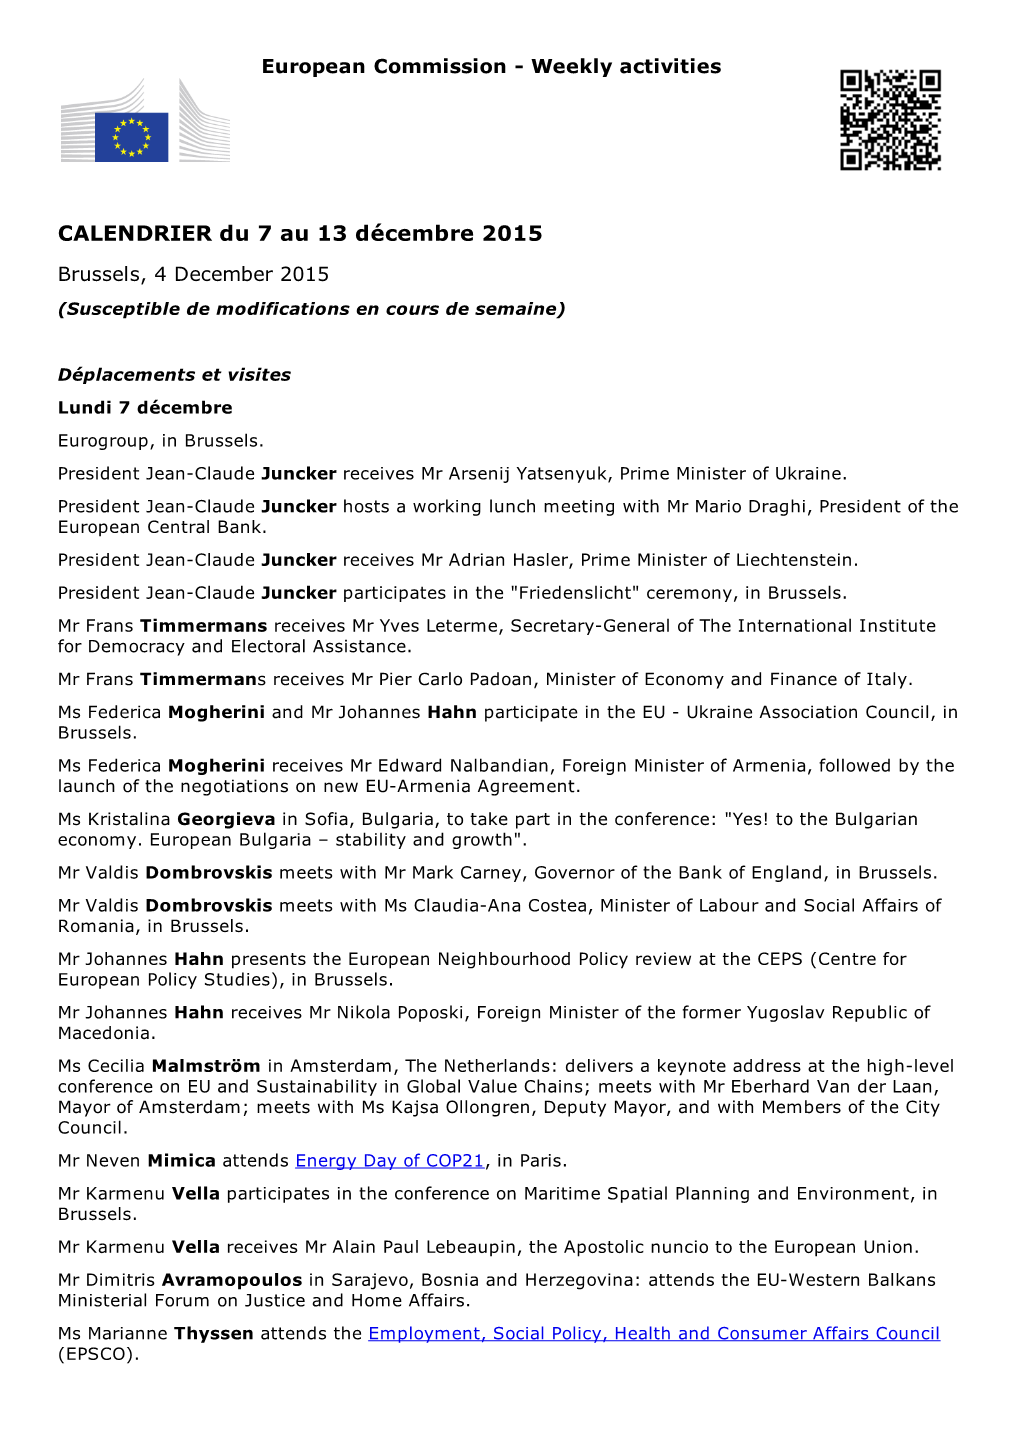 CALENDRIER Du 7 Au 13 Décembre 2015 Brussels, 4 December 2015 (Susceptible De Modifications En Cours De Semaine)